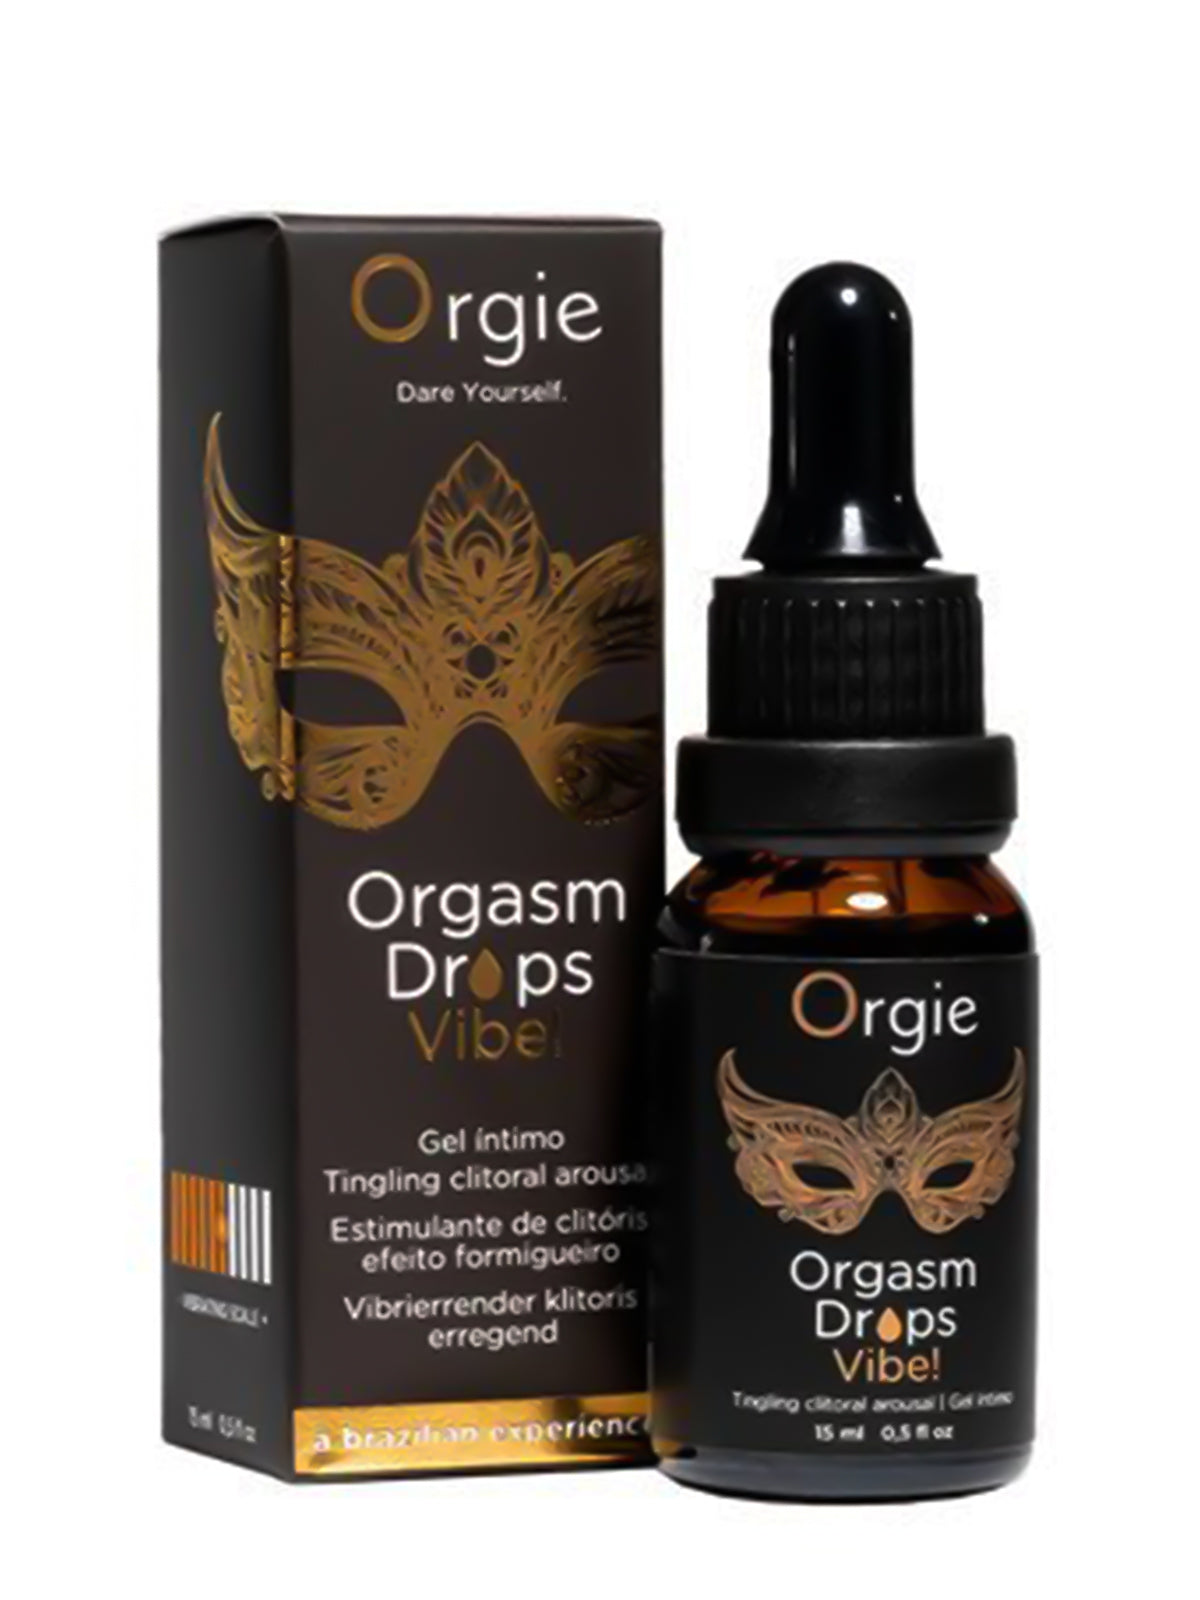 Org*e Orgasm Drops - Vibe